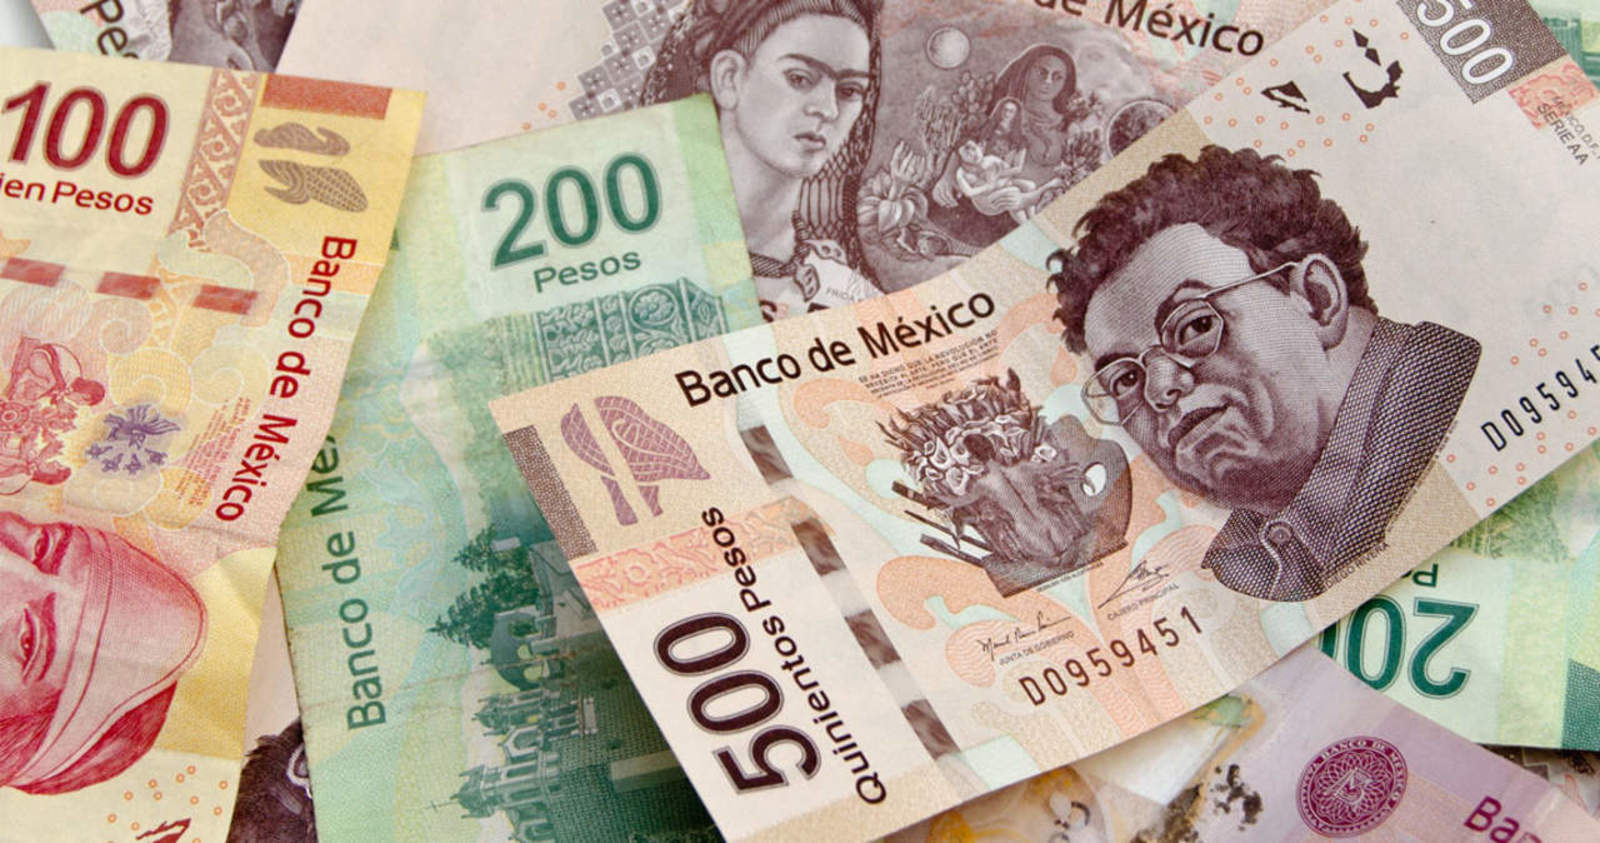 El Gobierno del nuevo mandatario Andrés Manuel López Obrador interpuso su primera denuncia ante la Fiscalía General contra el lavado de dinero, a fin de combatir el crimen organizado, informó hoy la Secretaría de Hacienda y Crédito Público (SHCP). (ARCHIVO)